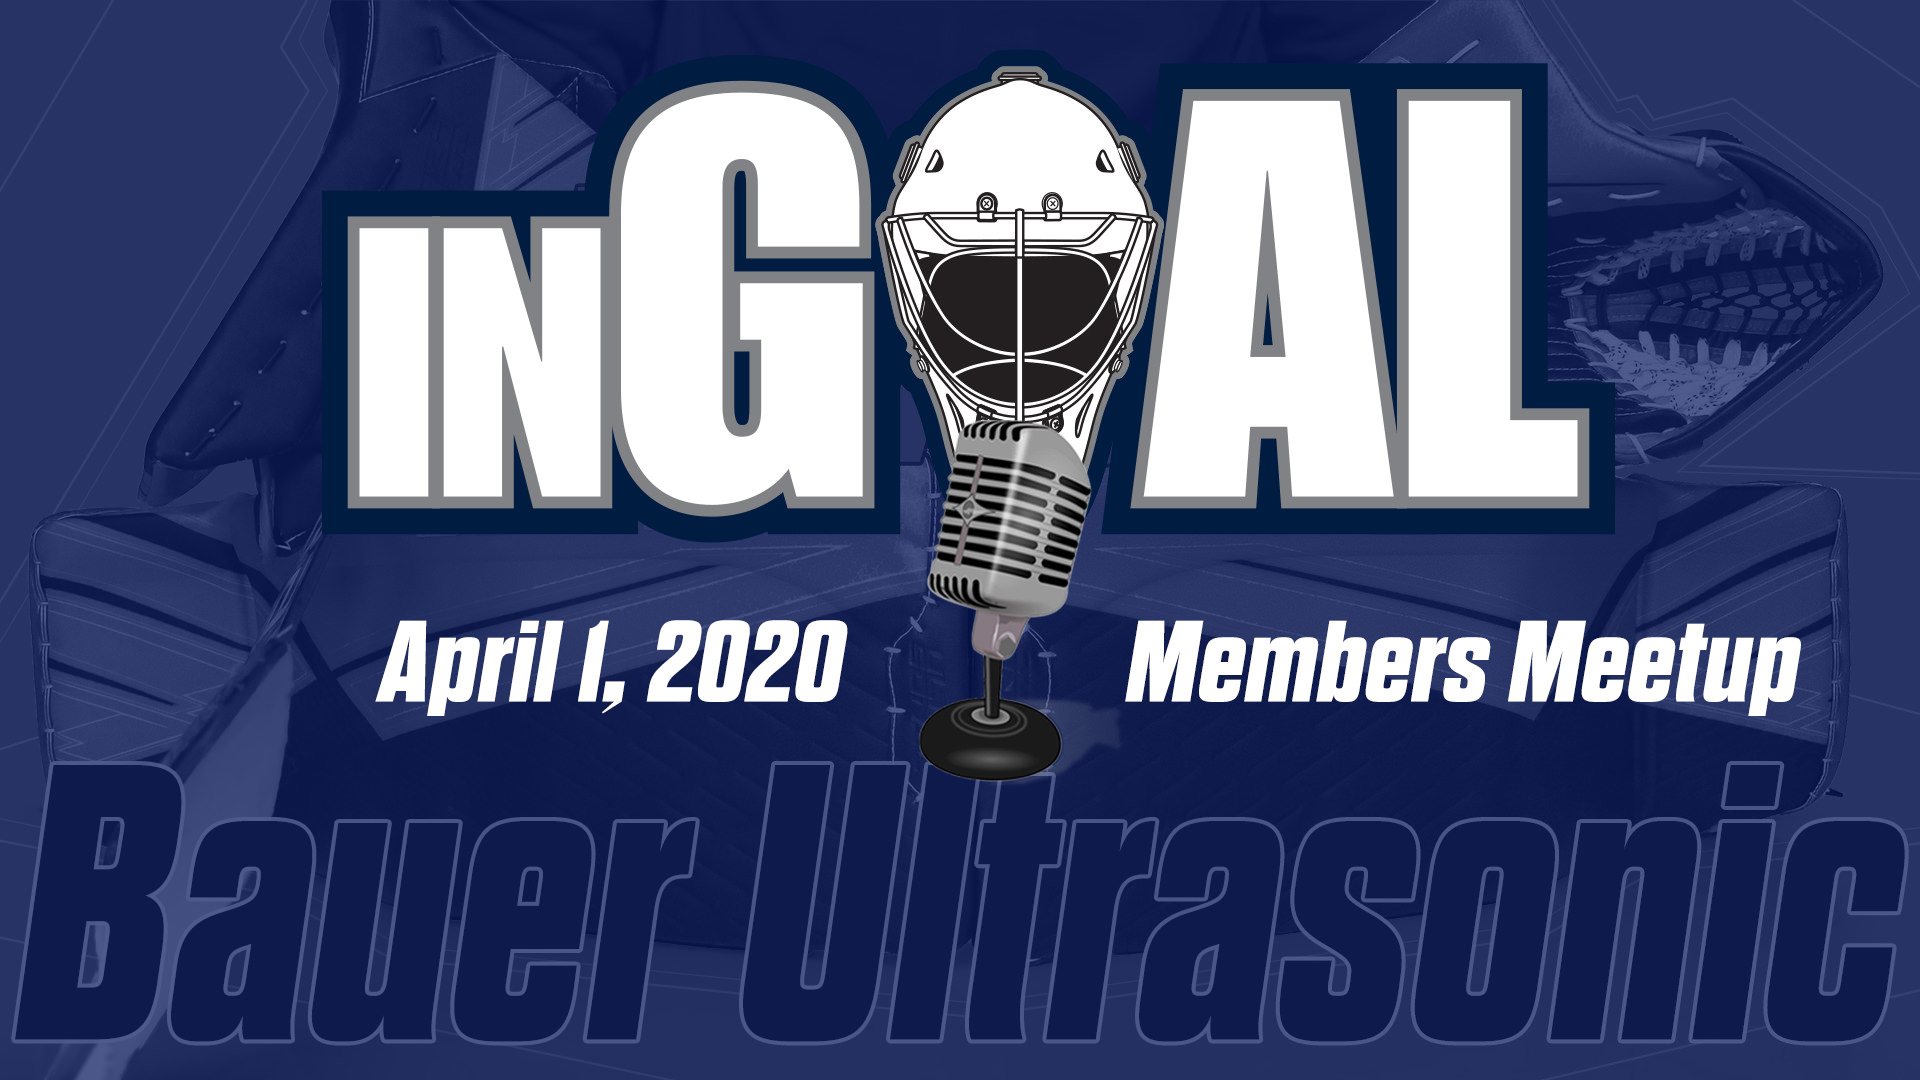 Members Meetup: Bauer Ultrasonic April 1, 2020